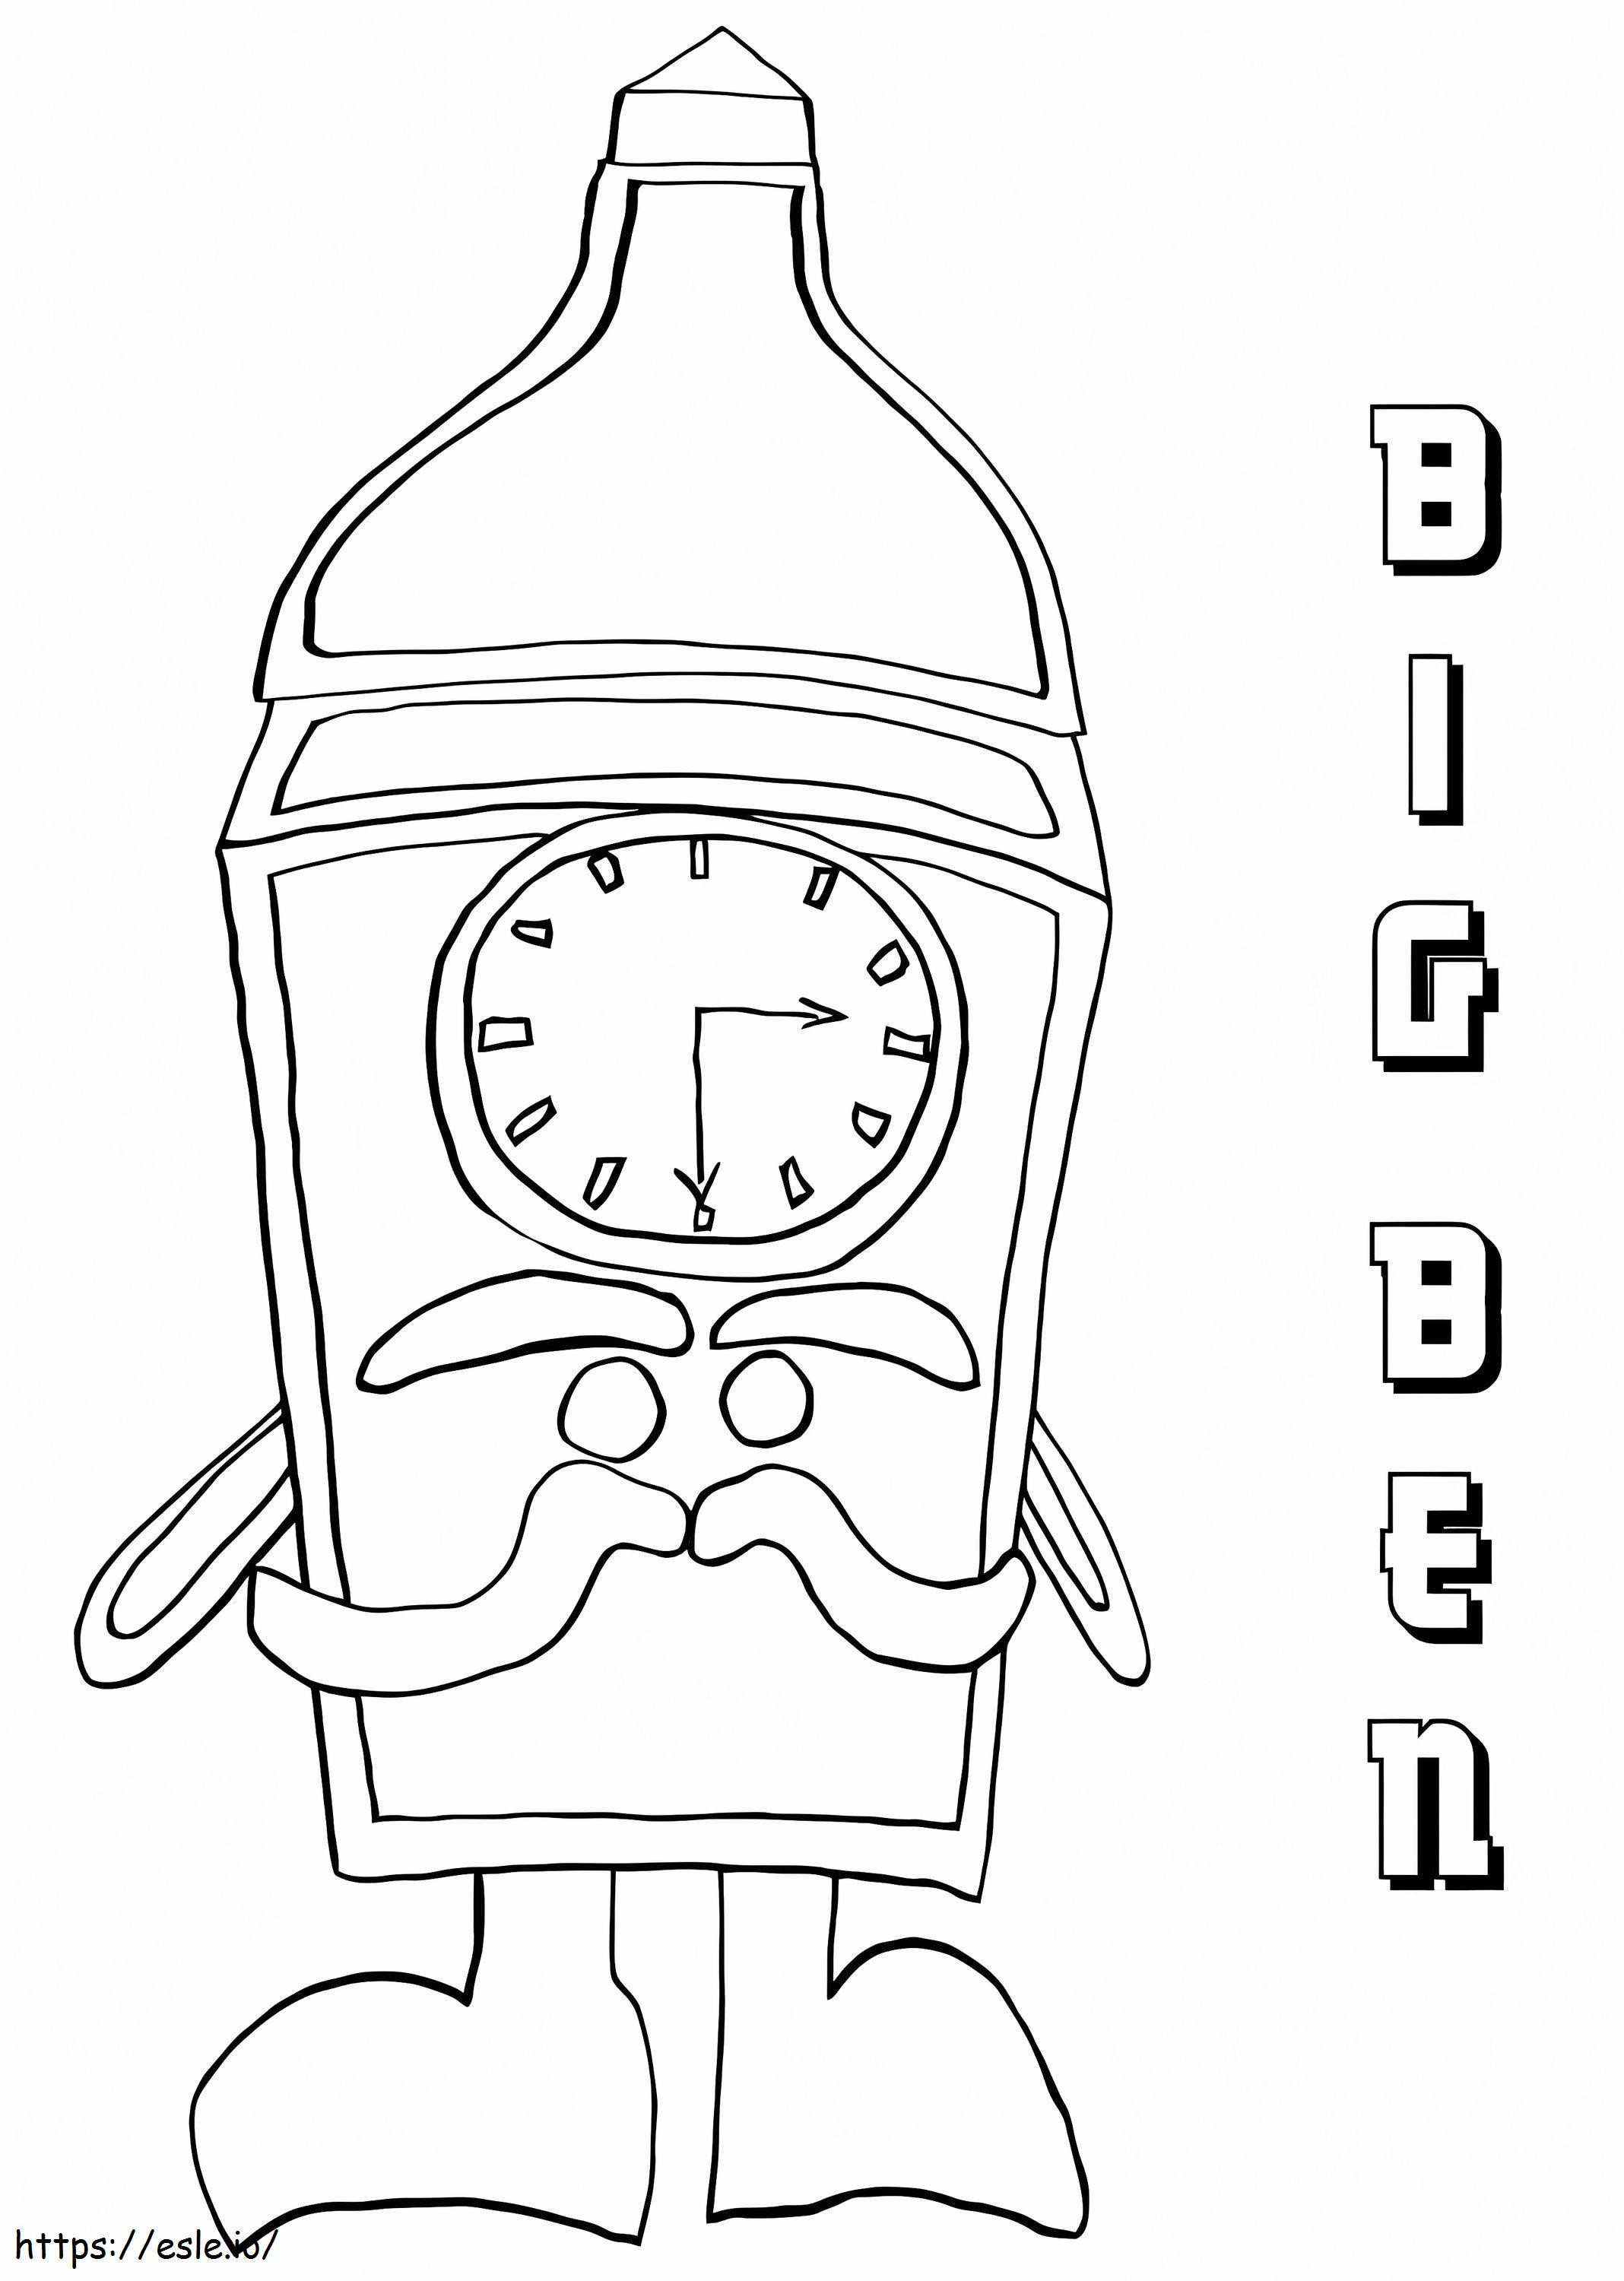 Cartoon Big Ben coloring page